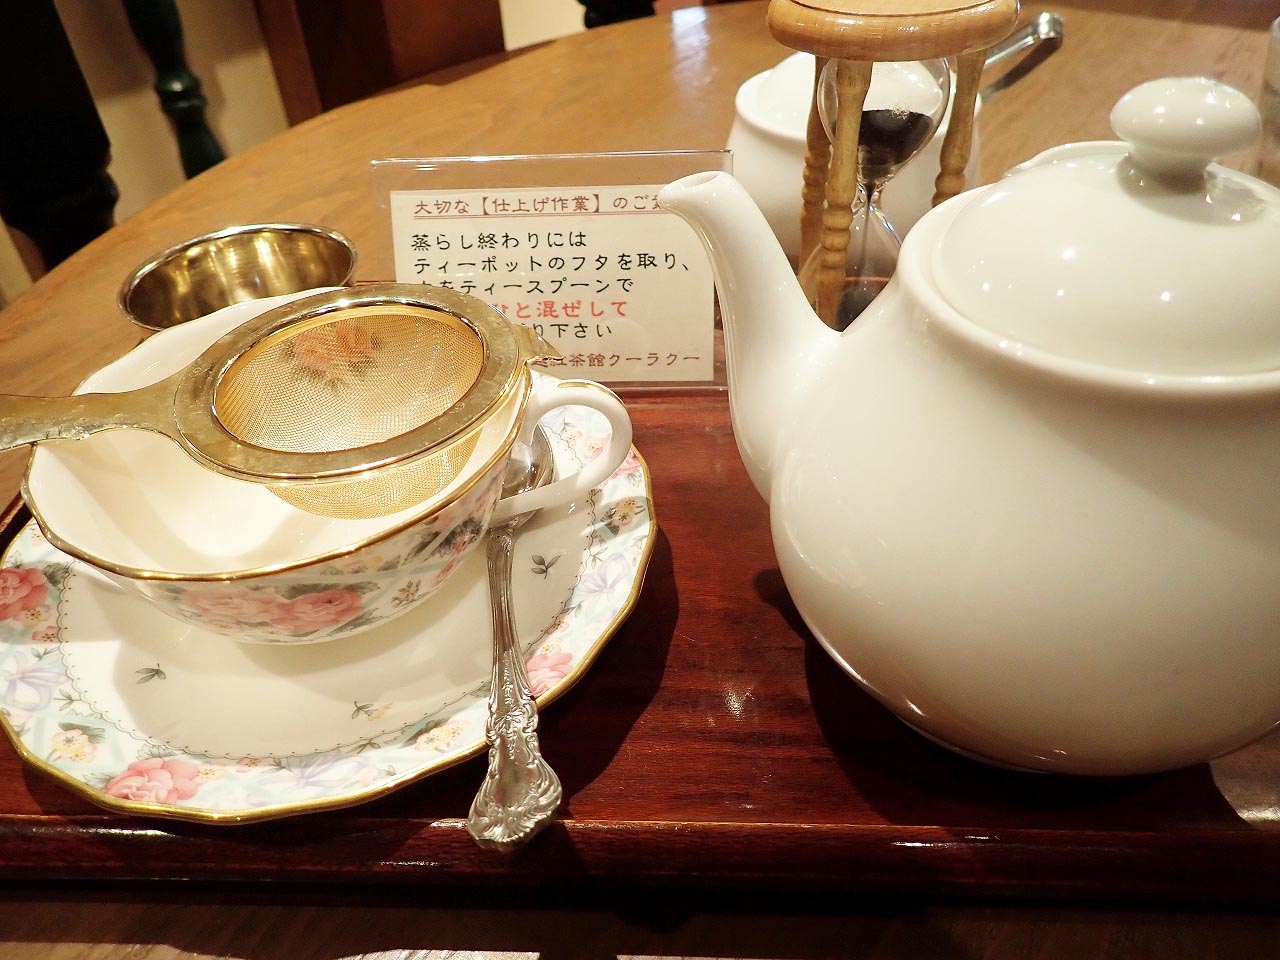 紅茶はティーポットで出てくるスタイルです。金縁のティーカップはやはりきれいです